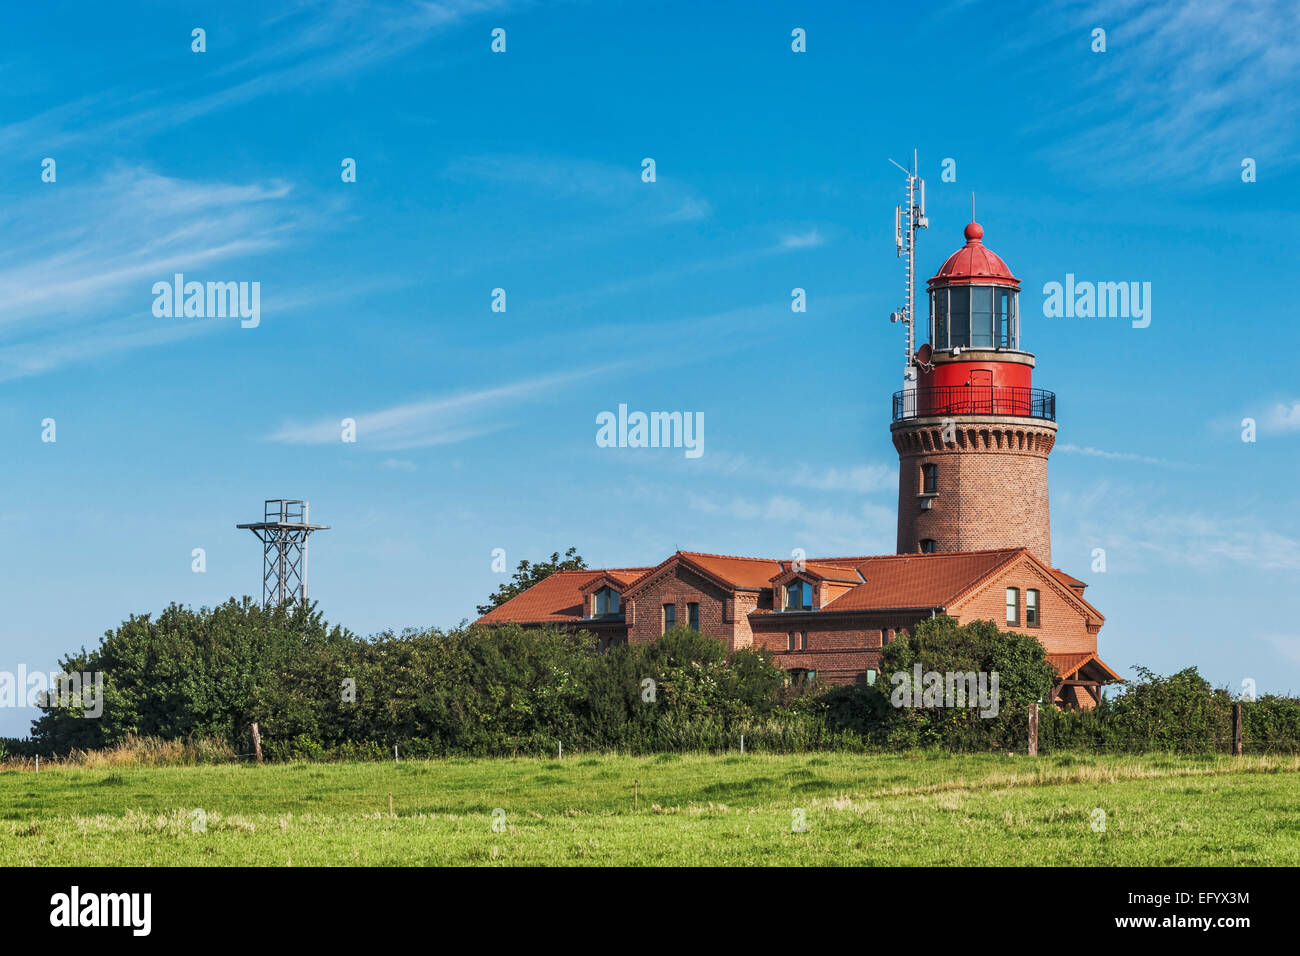 Le phare de Bütgenbacher Hof est situé sur la mer Baltique, Rostock, Mecklembourg-Poméranie-Occidentale, Allemagne, Europe Banque D'Images